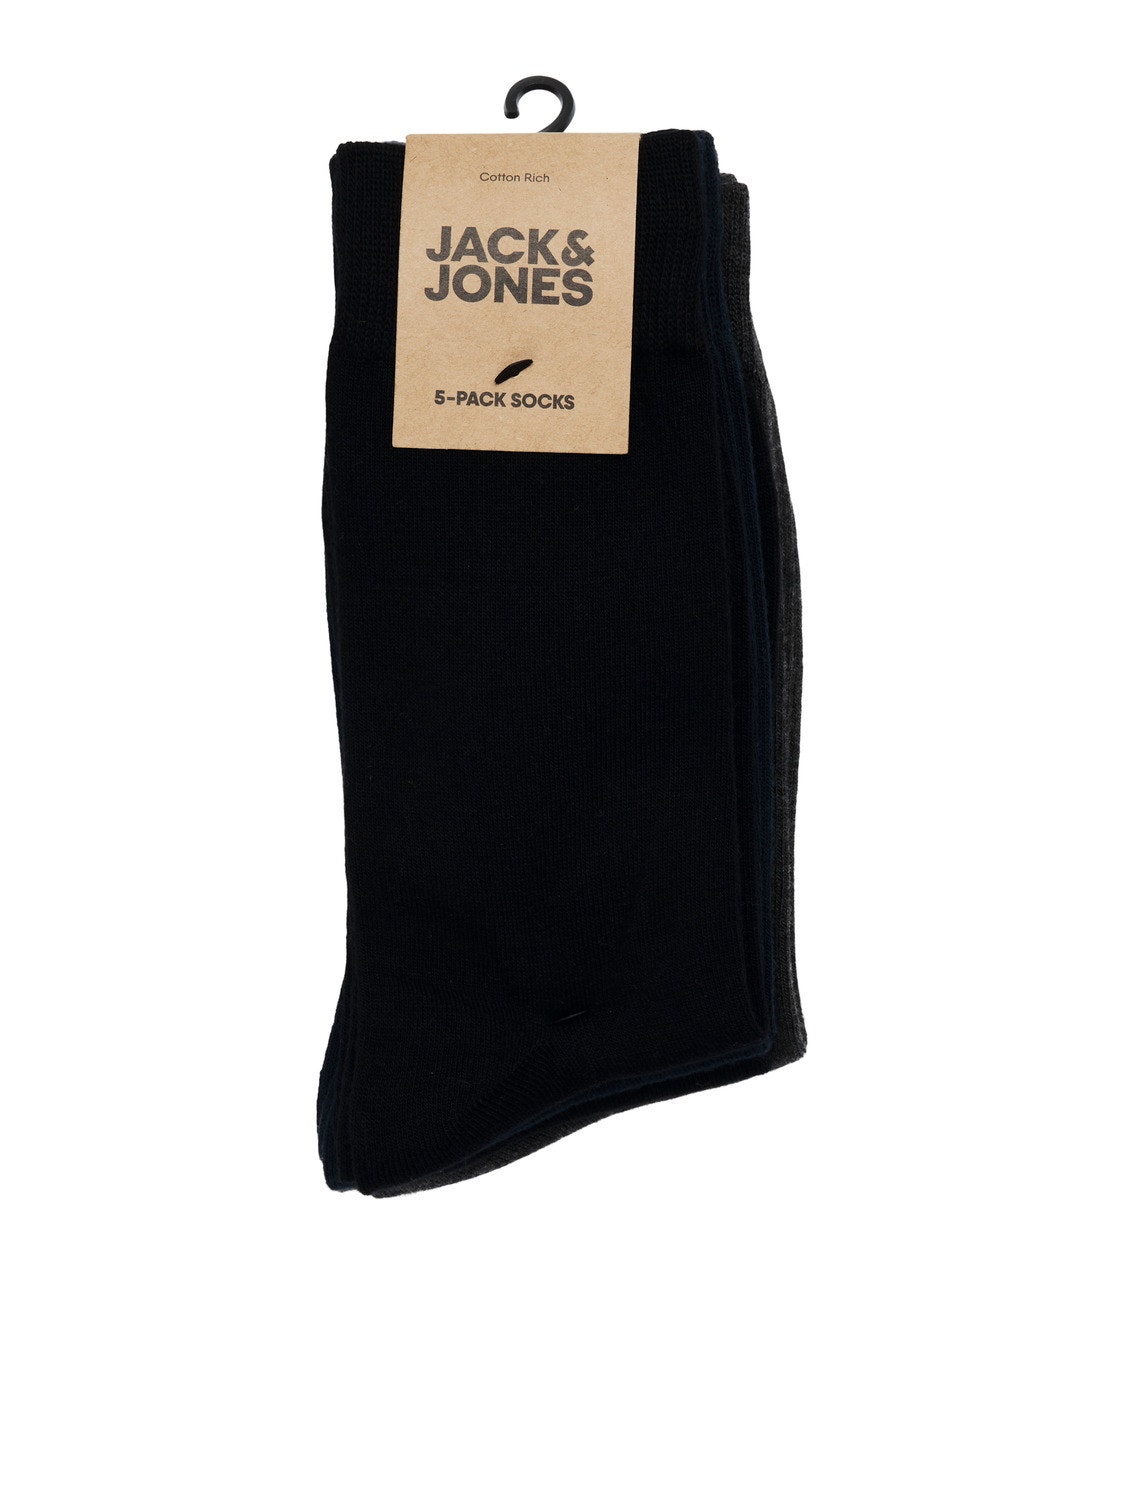 Jack & Jones Paquete de 5 Meias -Black - 12198027